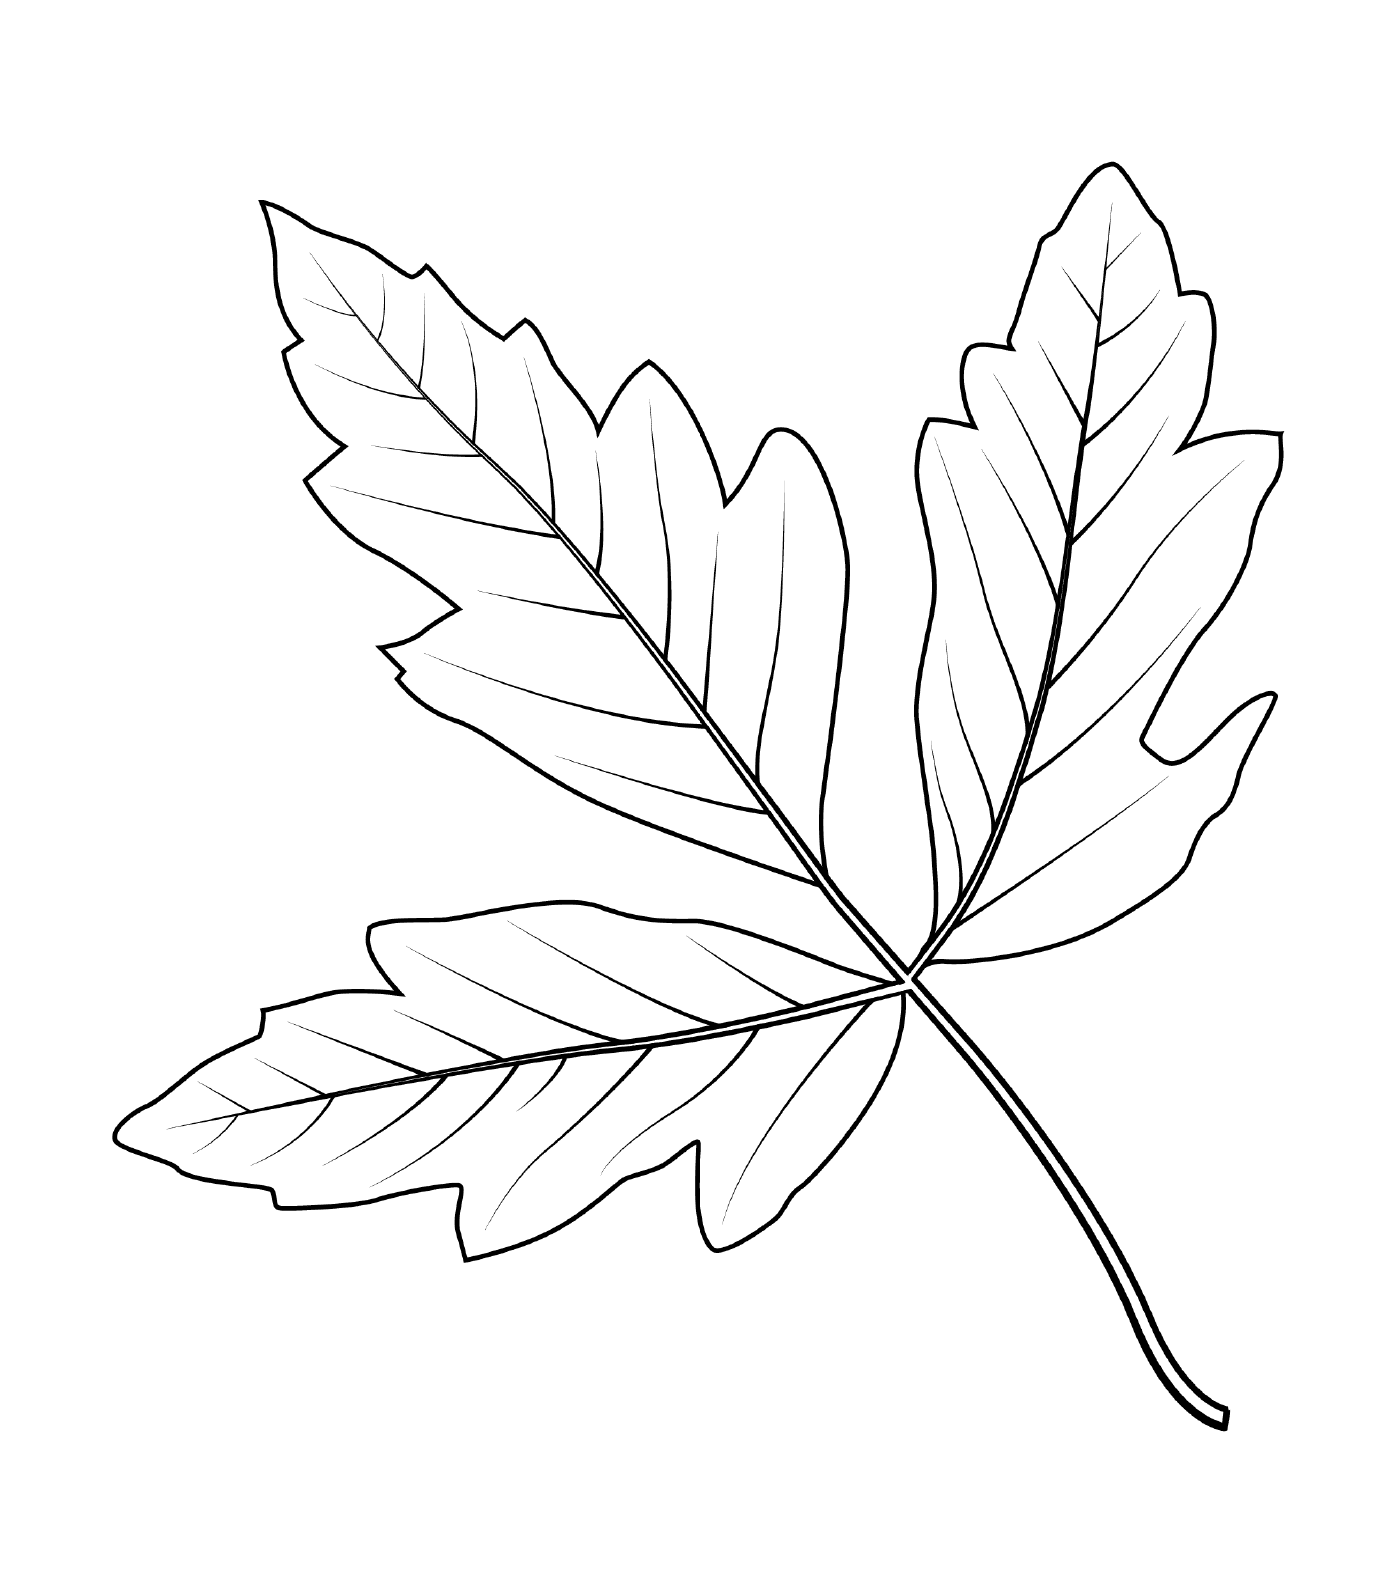  Кленовые листья с корой 